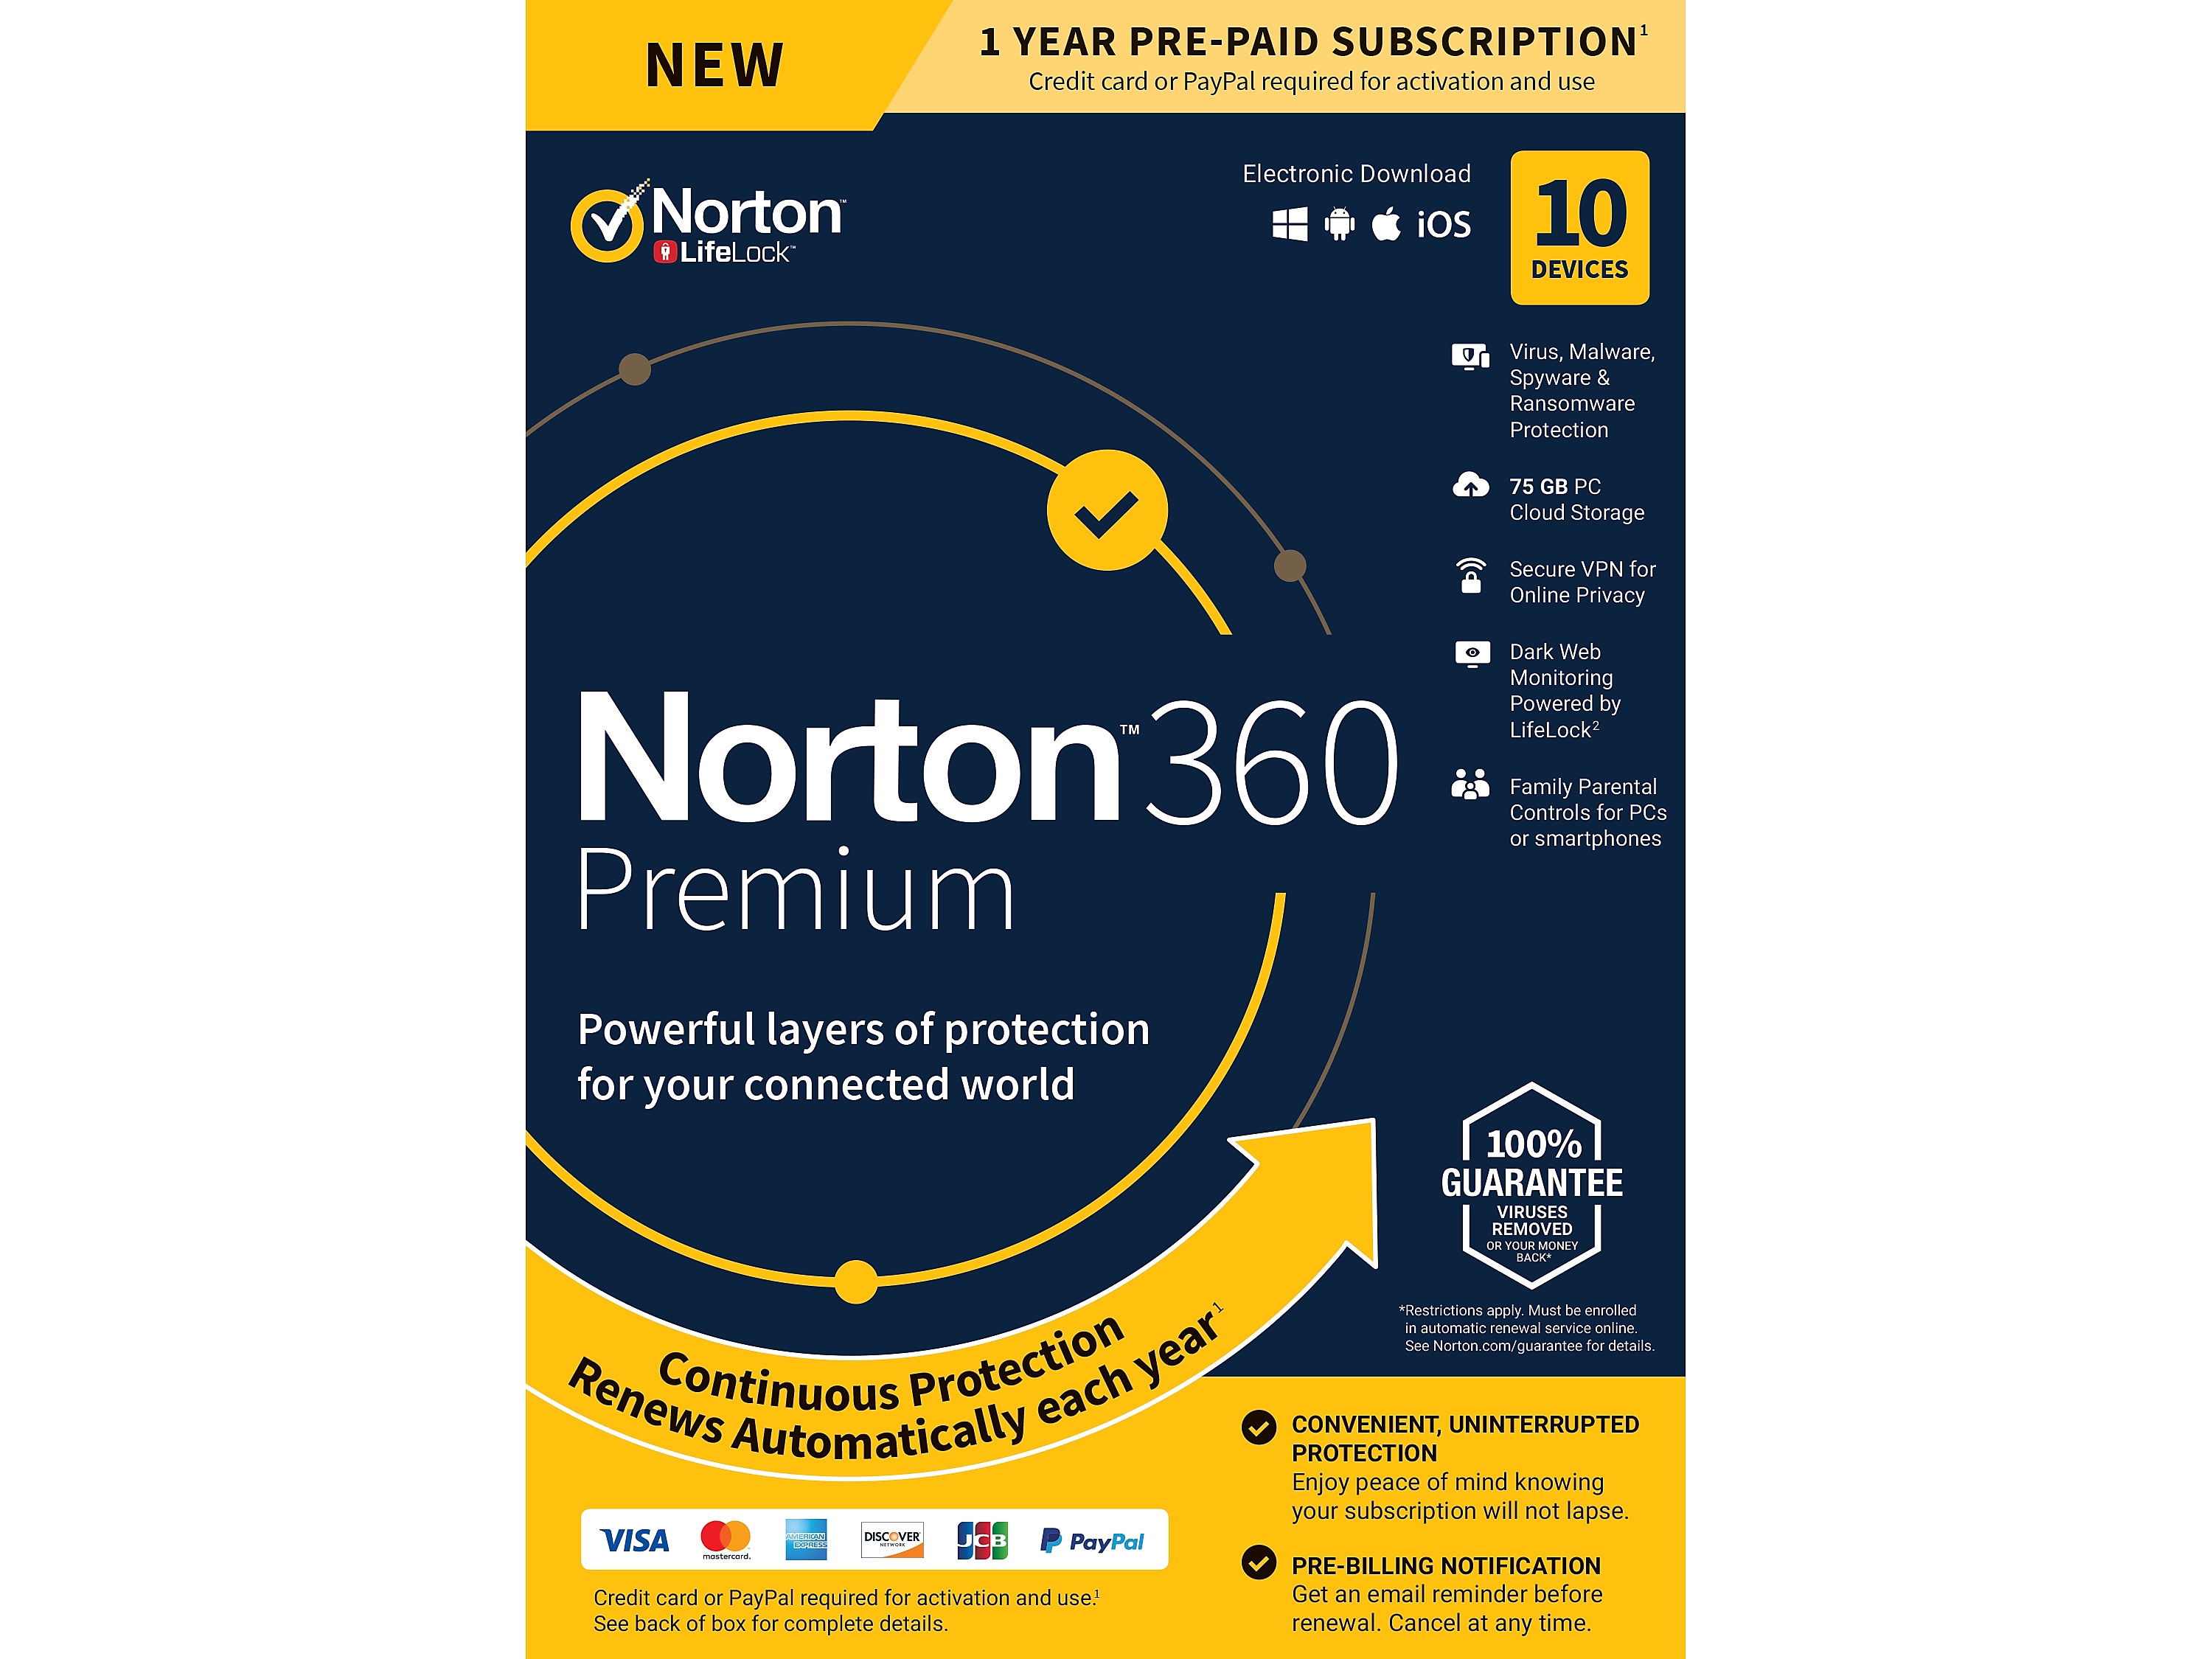 norton utilities premium review 2020